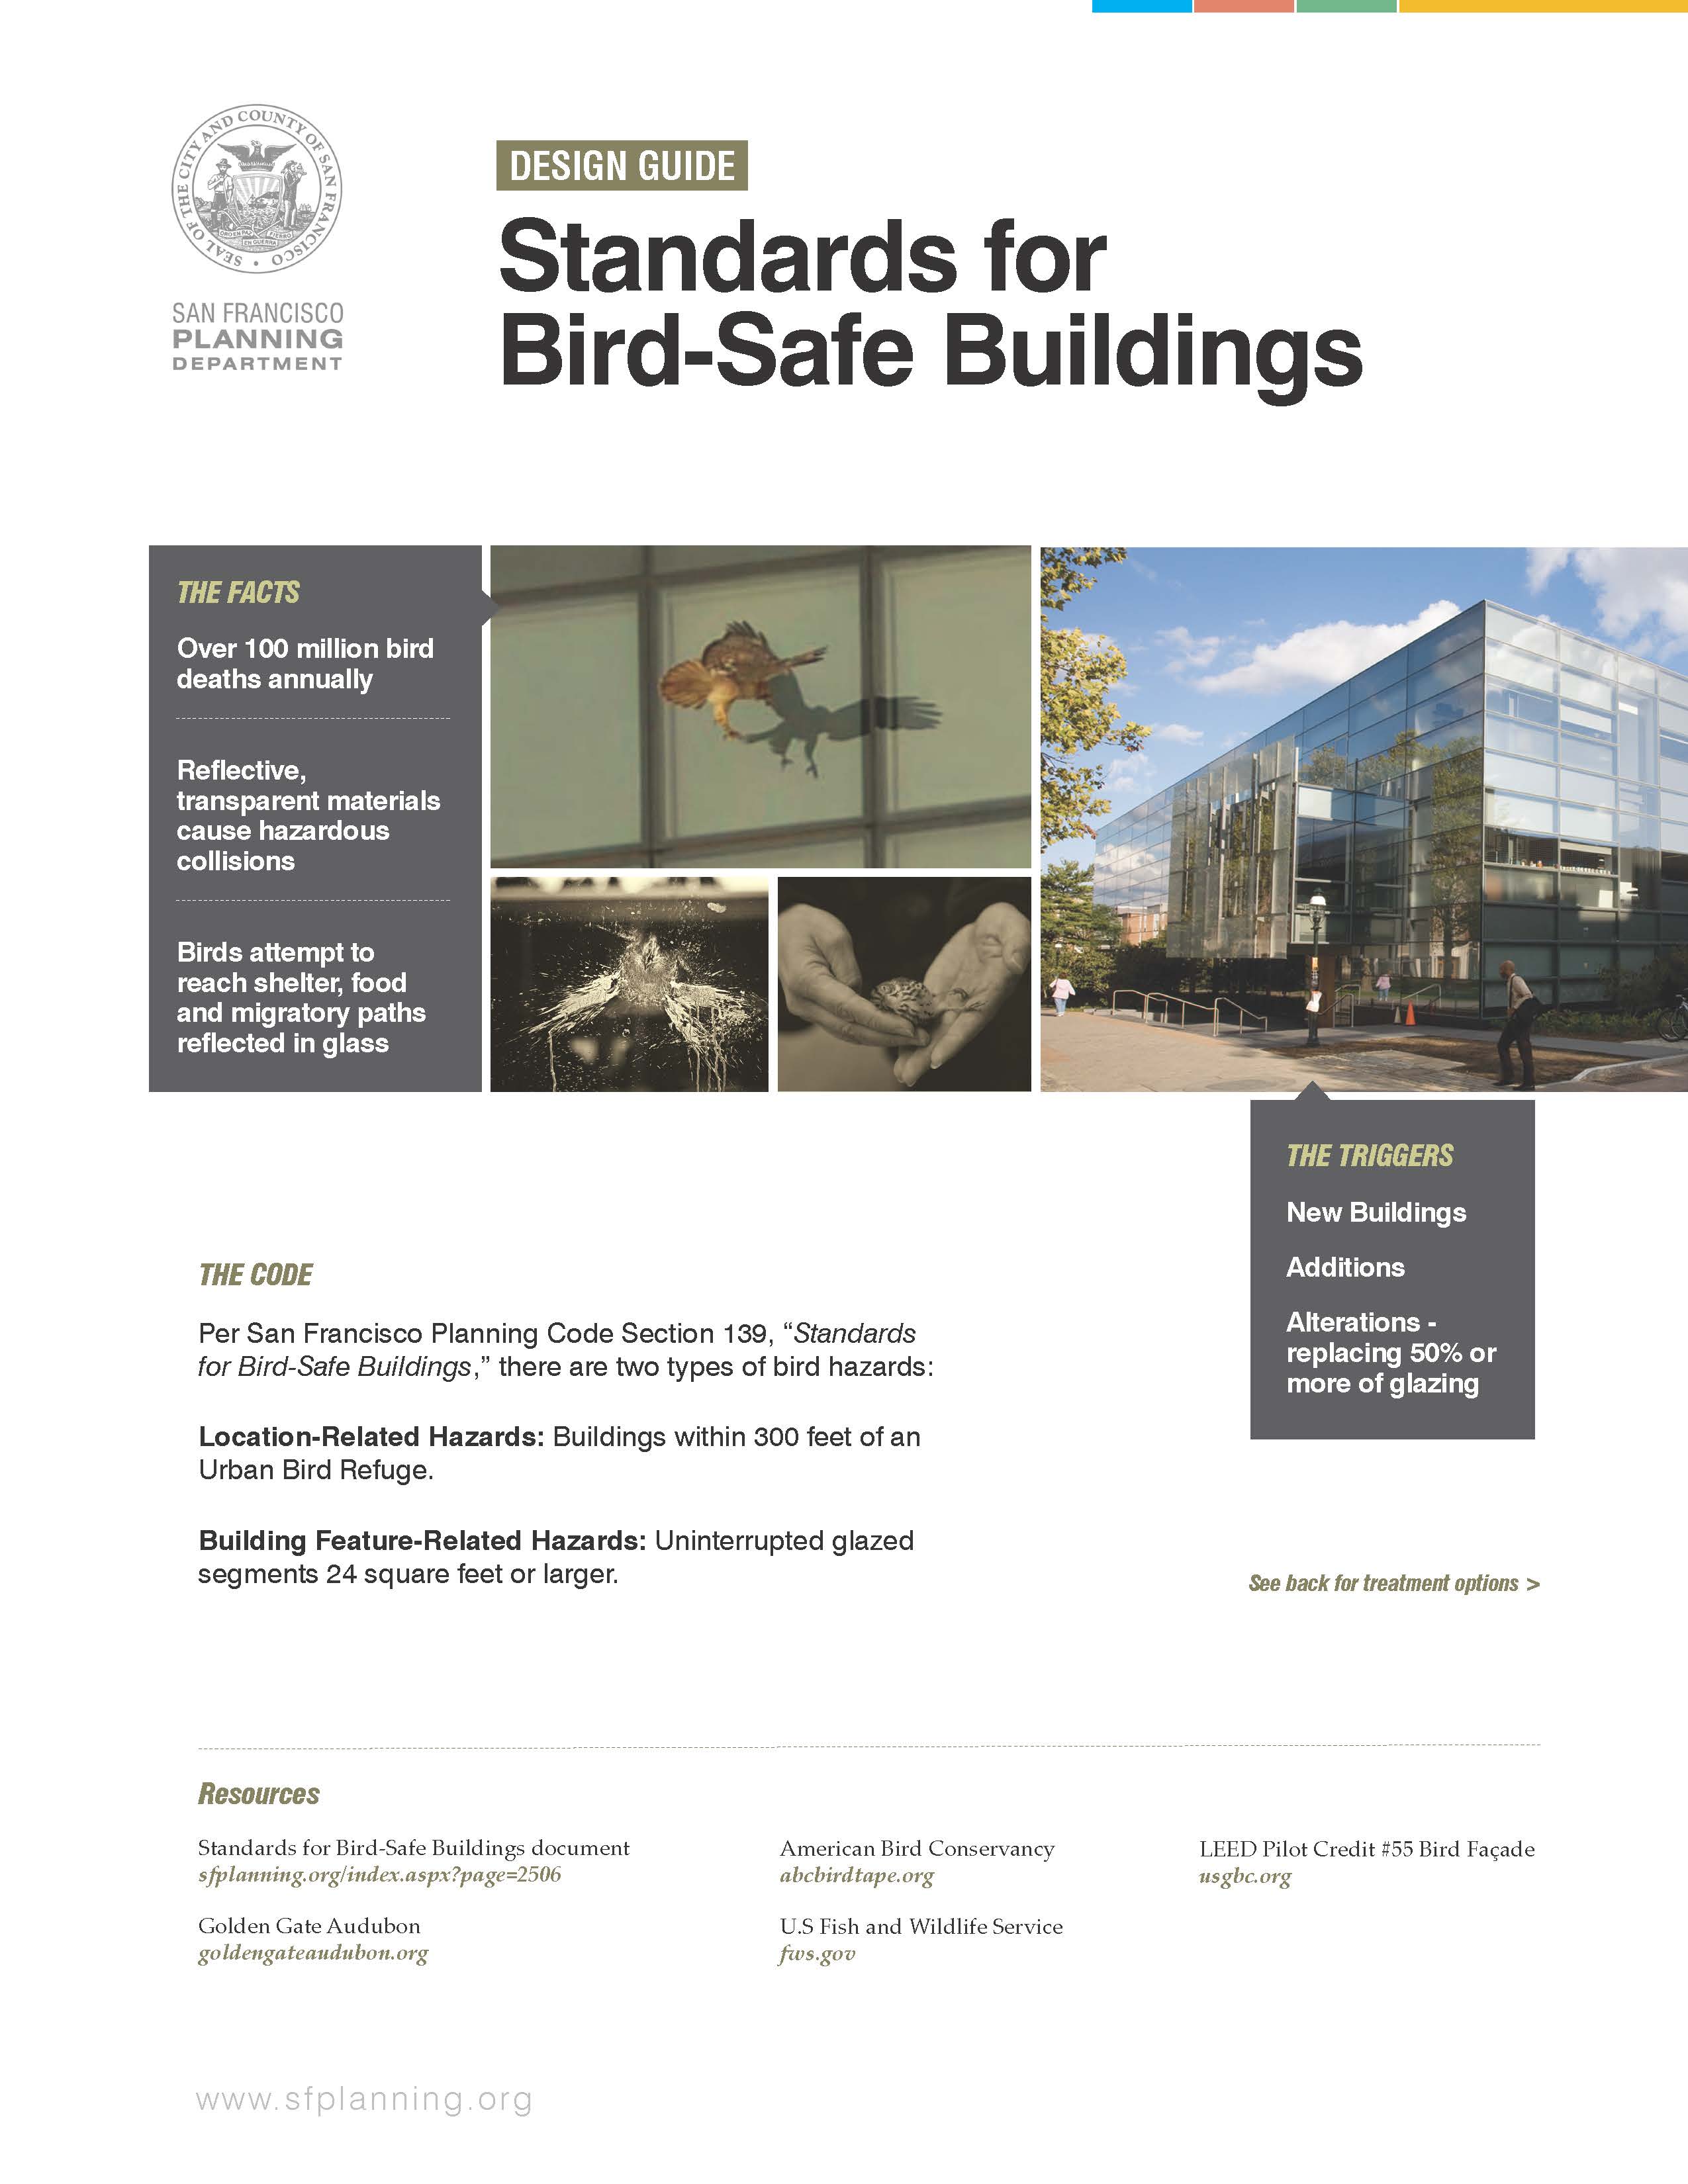 Design Standards for Bird-Safe Buildings